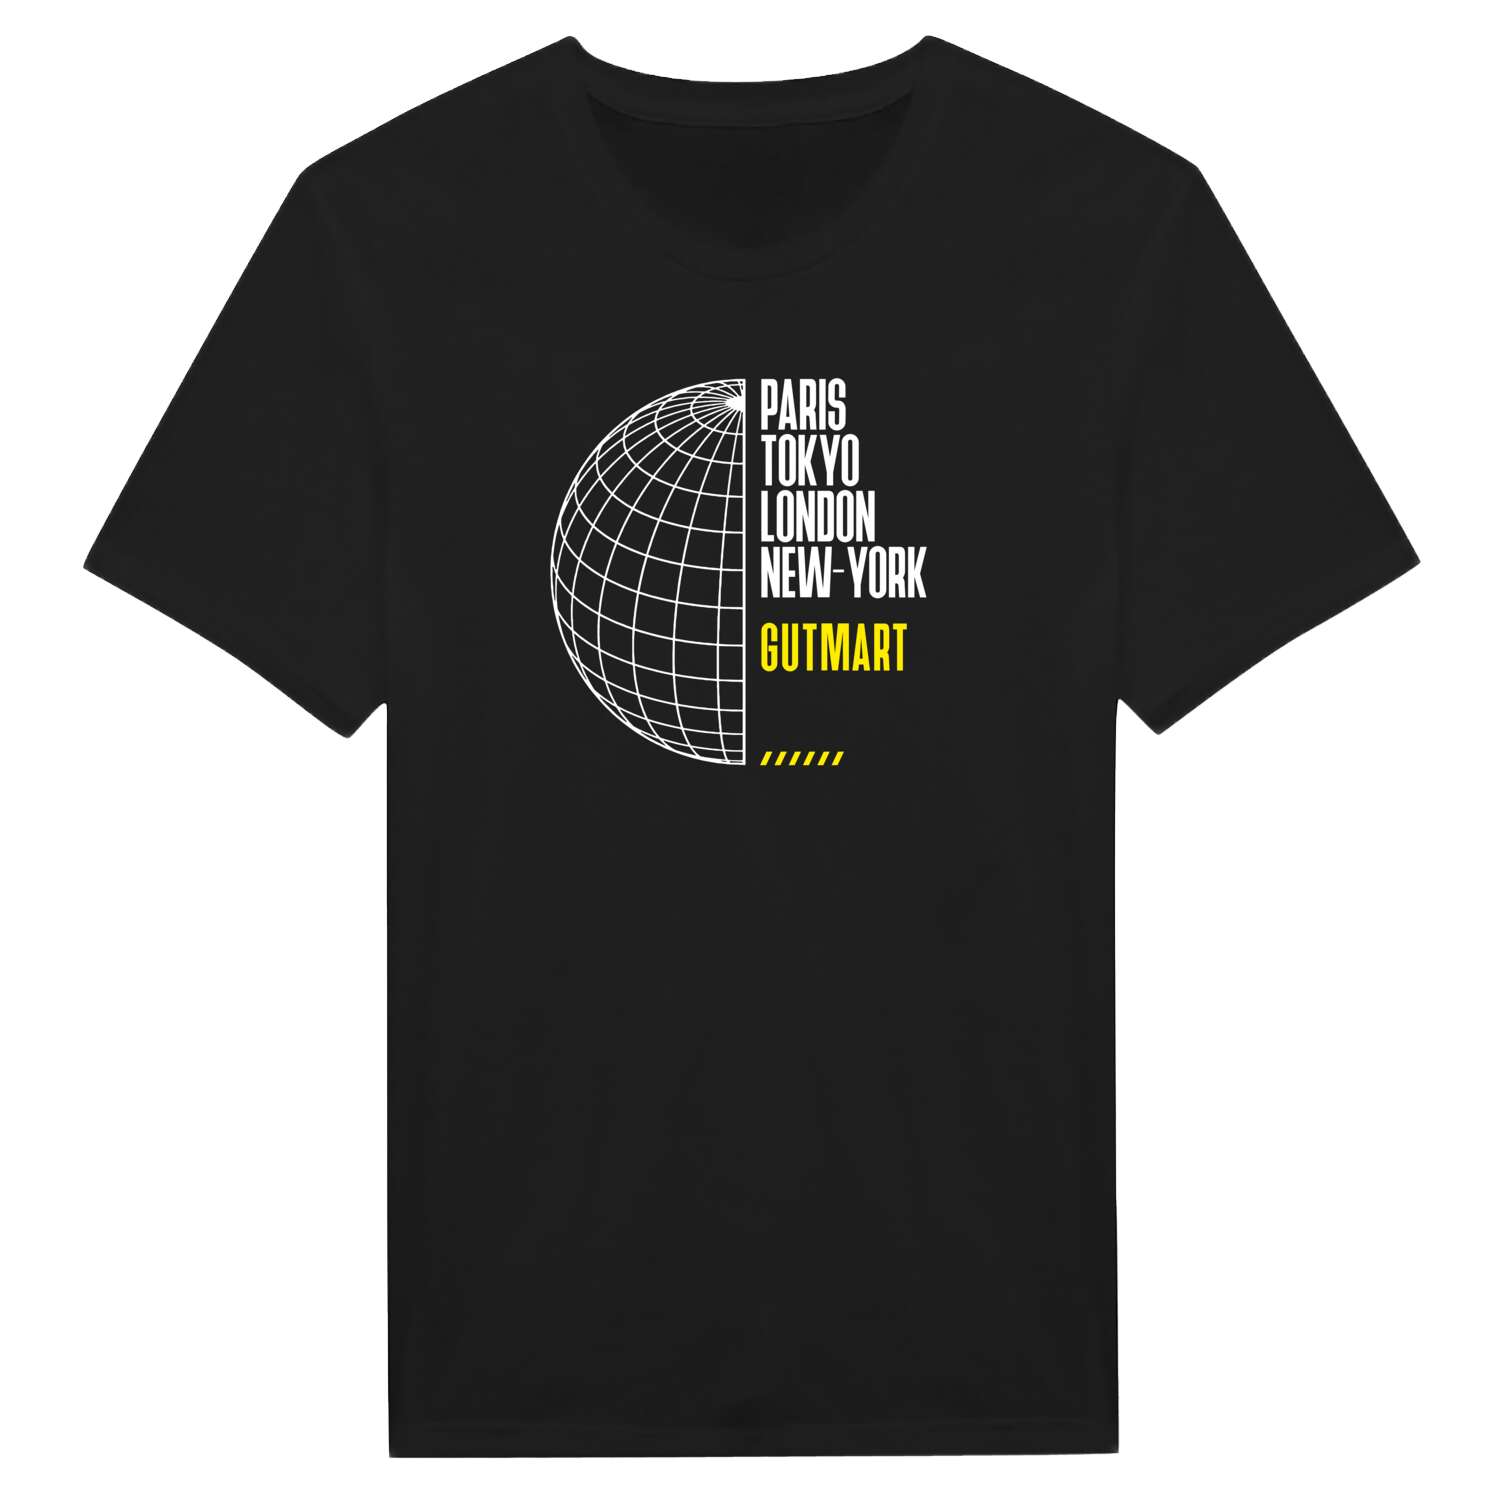 Gutmart T-Shirt »Paris Tokyo London«